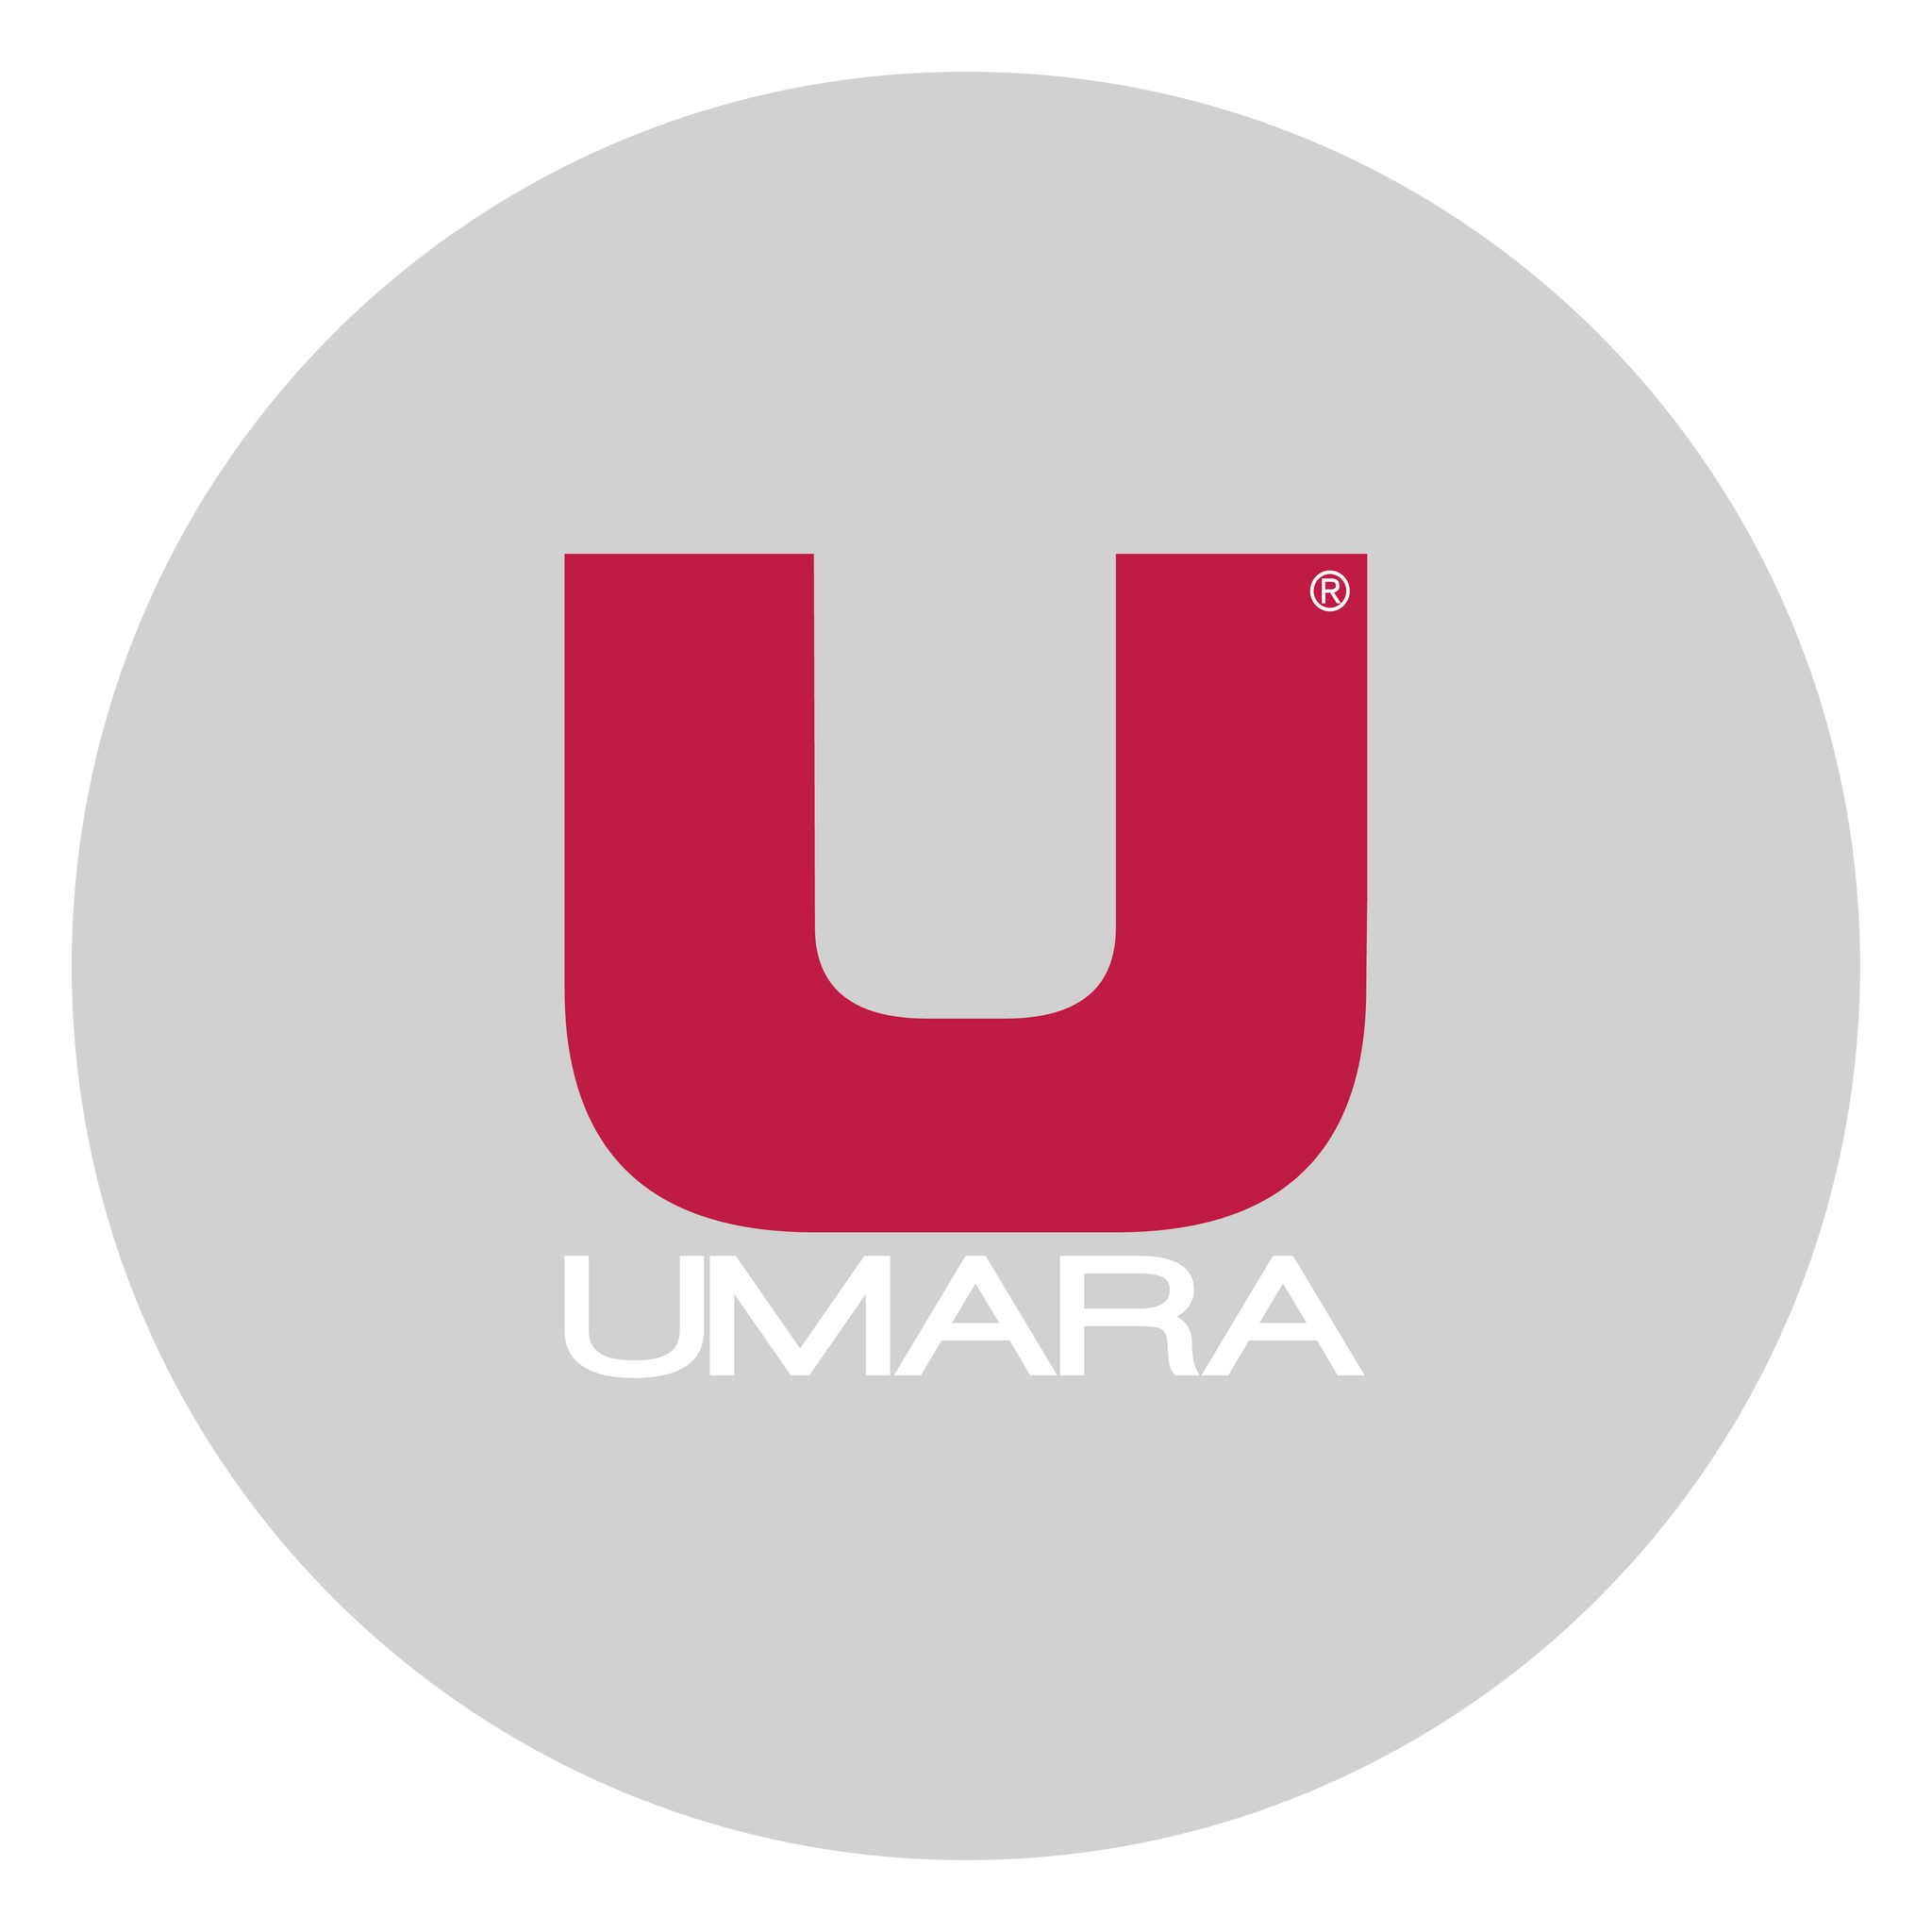 Umara-Skipaket